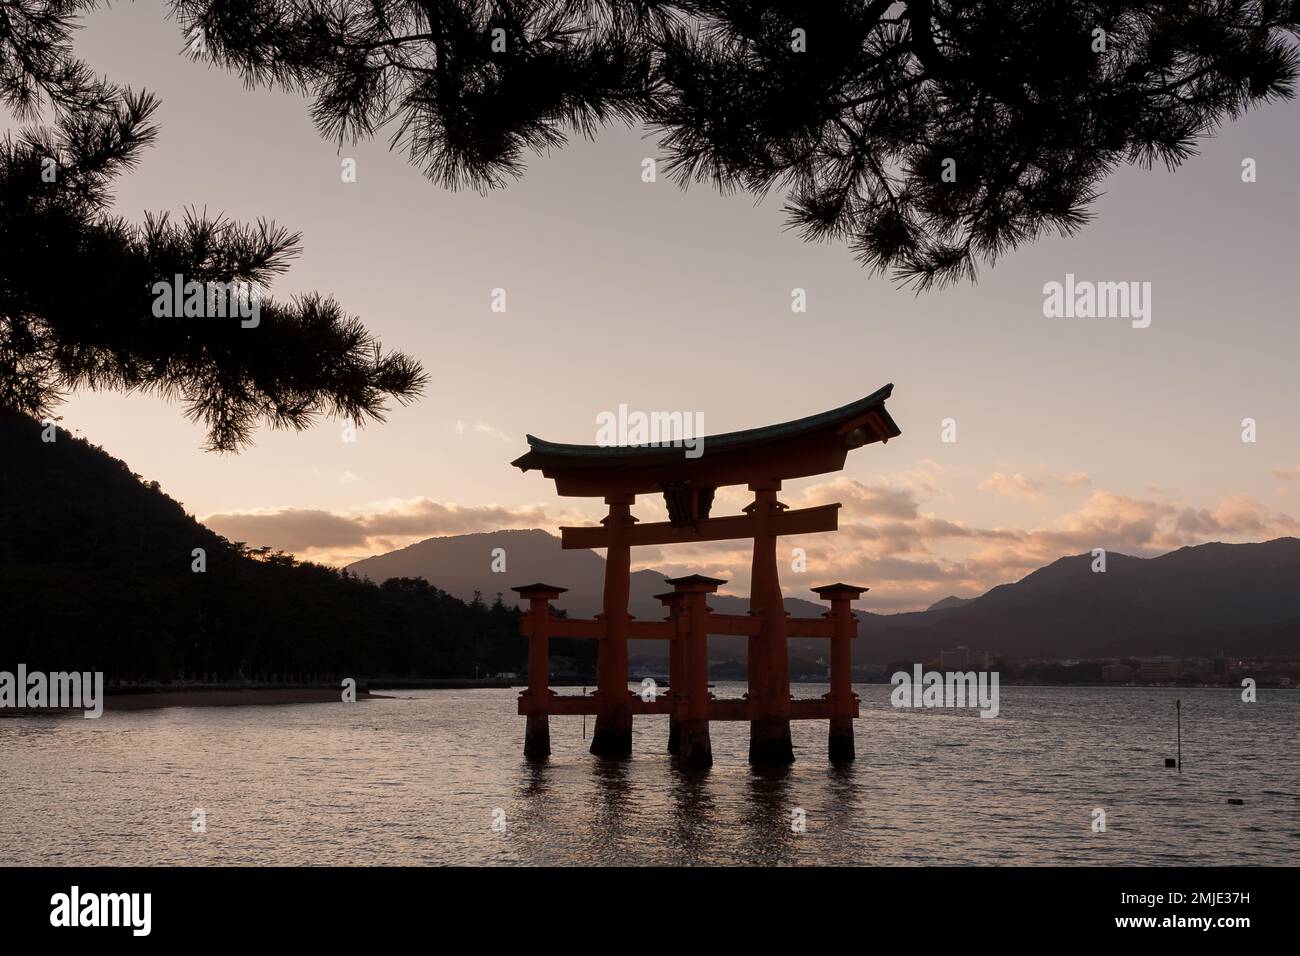 The famous floating torii gate at Itsukushima  shrine on Miyajima Island, Hiroshima, Japan Stock Photo